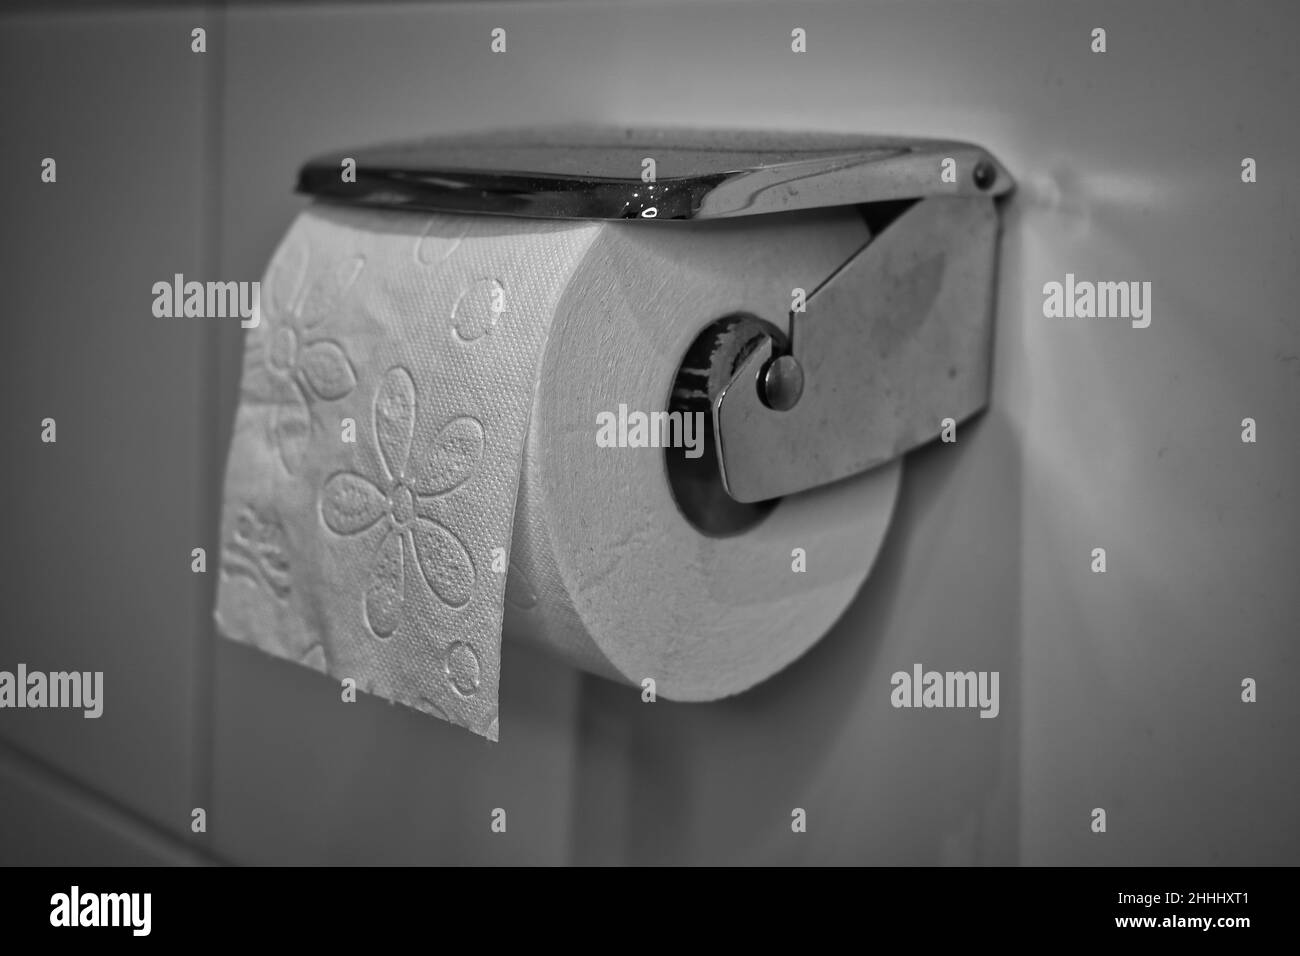 Toilettenpapierhalter mit Toilettenpapier in schwarz-weiß Stockfotografie -  Alamy